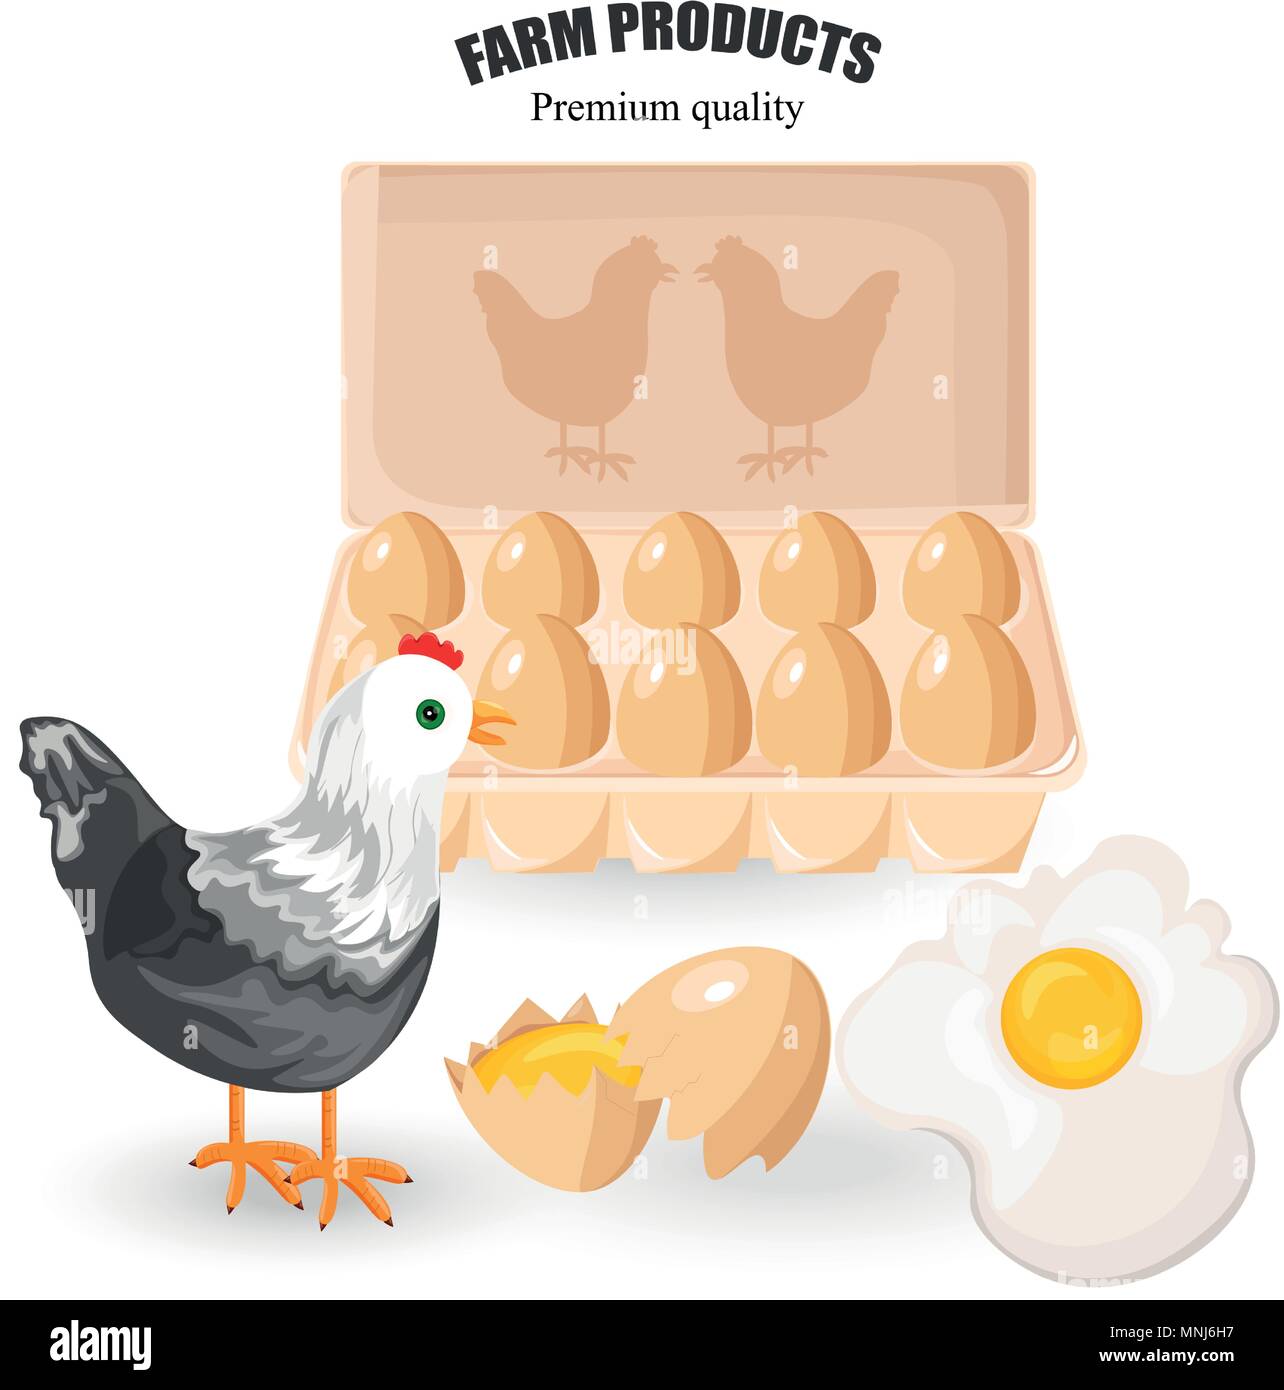 Eier aus Freilandhaltung Vektor. Bündel von Eiern und Geflügel. Eco farm Produkte Stock Vektor